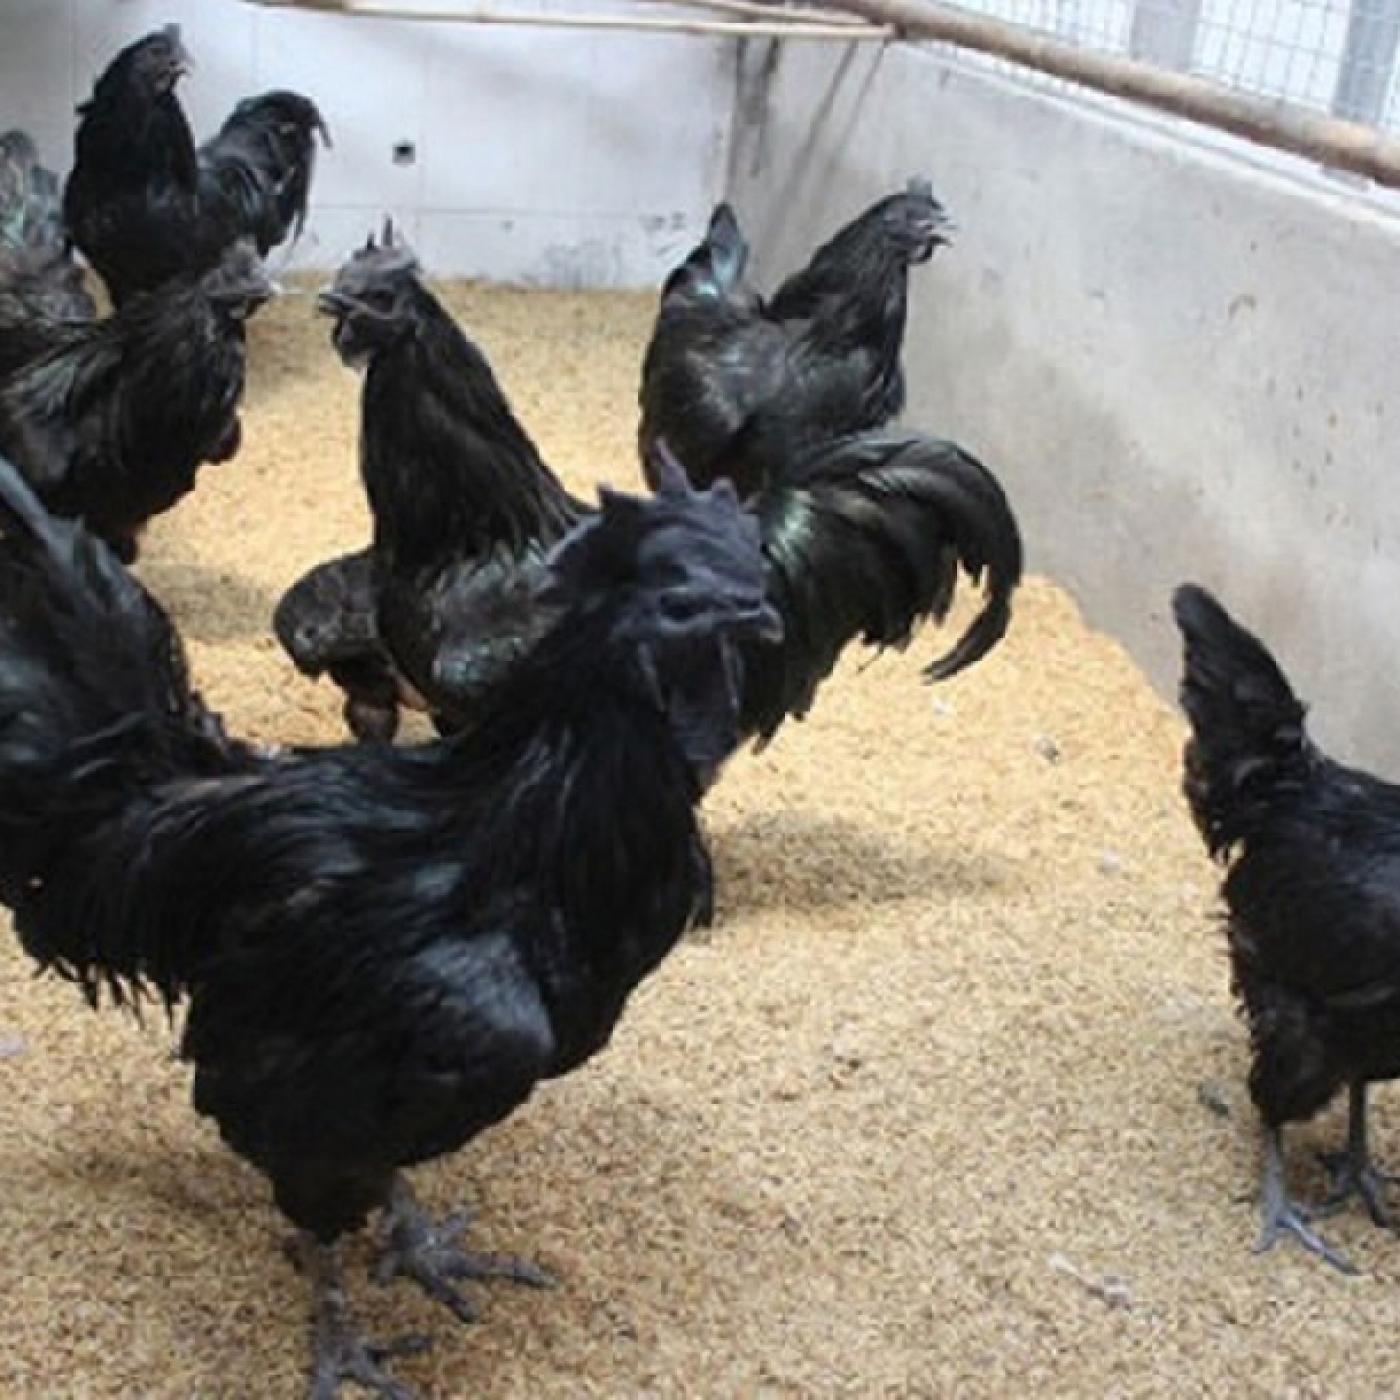 Gà đen Indonesia: Bạn muốn tìm hiểu về các giống gà độc đáo và lạ mắt? Những chiếc khăn đen bao phủ toàn thân gà sẽ khiến bạn tò mò và thích thú. Hãy cùng chúng tôi chiêm ngưỡng vẻ đẹp của giống gà đen Indonesia - một giống gà hoàn toàn khác biệt và đáng yêu.